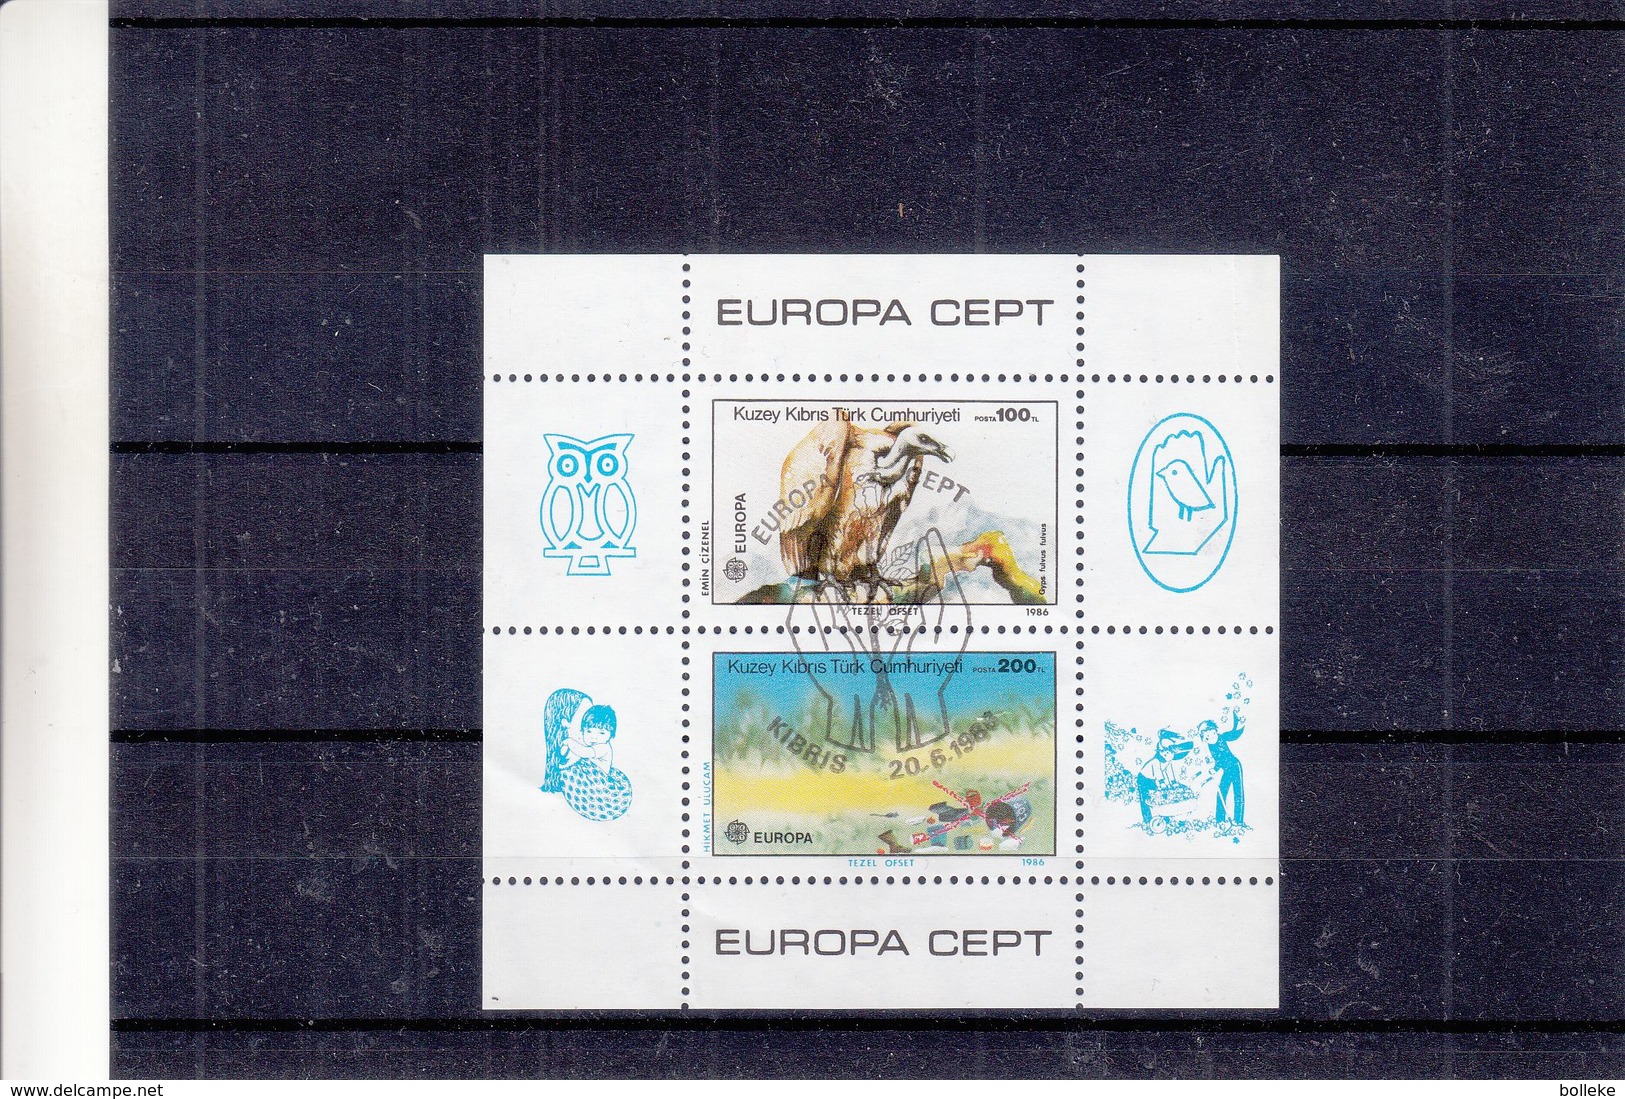 Europa 1986 - Chypre Turque - Bloc Oblitéré - Oiseaux - Vautours - Hiboux - Valeur 15 Euros - Bloc Froissée - Oblitérés